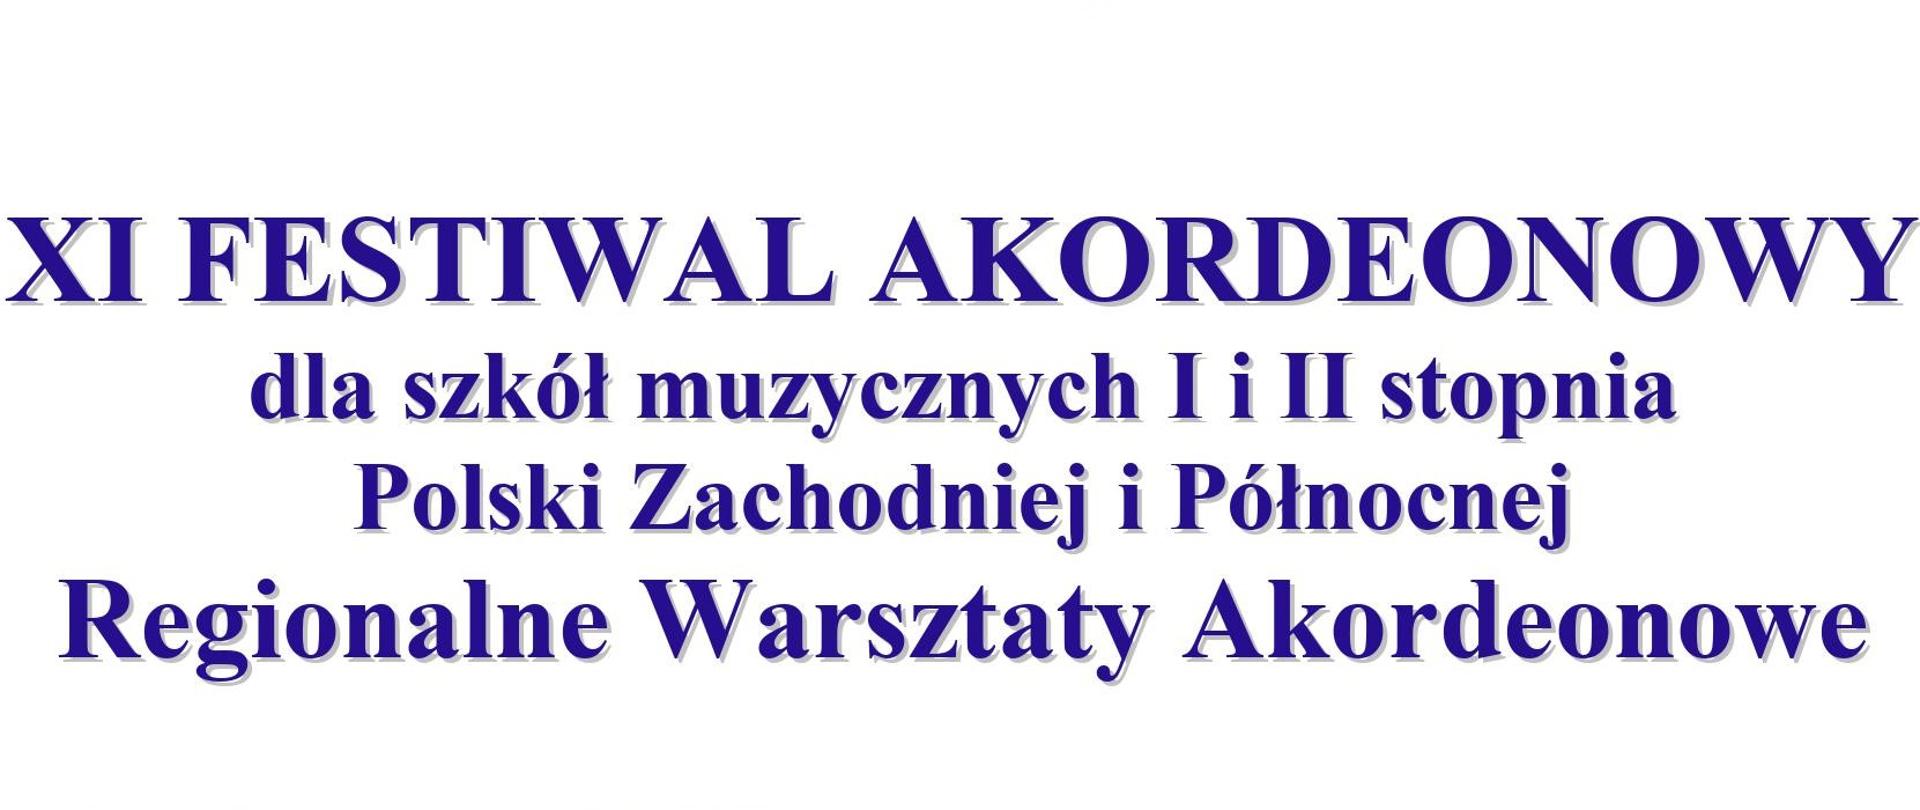 Nazwa w 4 wersach: XI Festiwal akordeonowy dla szkół muzycznych I i II stopnia Polski Północnej i Zachodniej Regionalne Warsztaty Akordeonowe